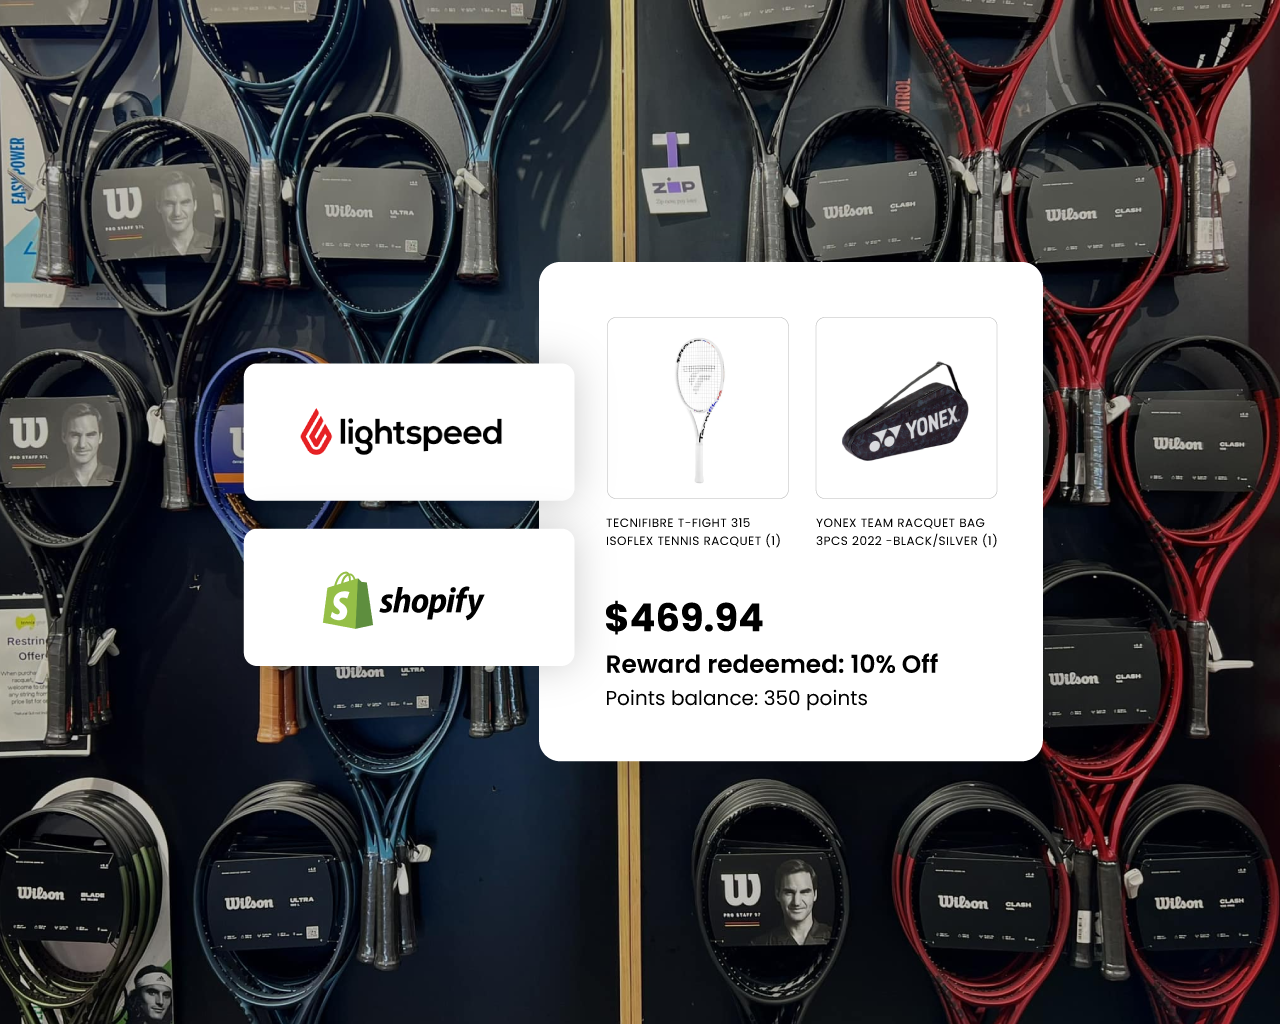 Tennis-Gears-Onichannel-Customer-Data-Lightspeed-Shopify